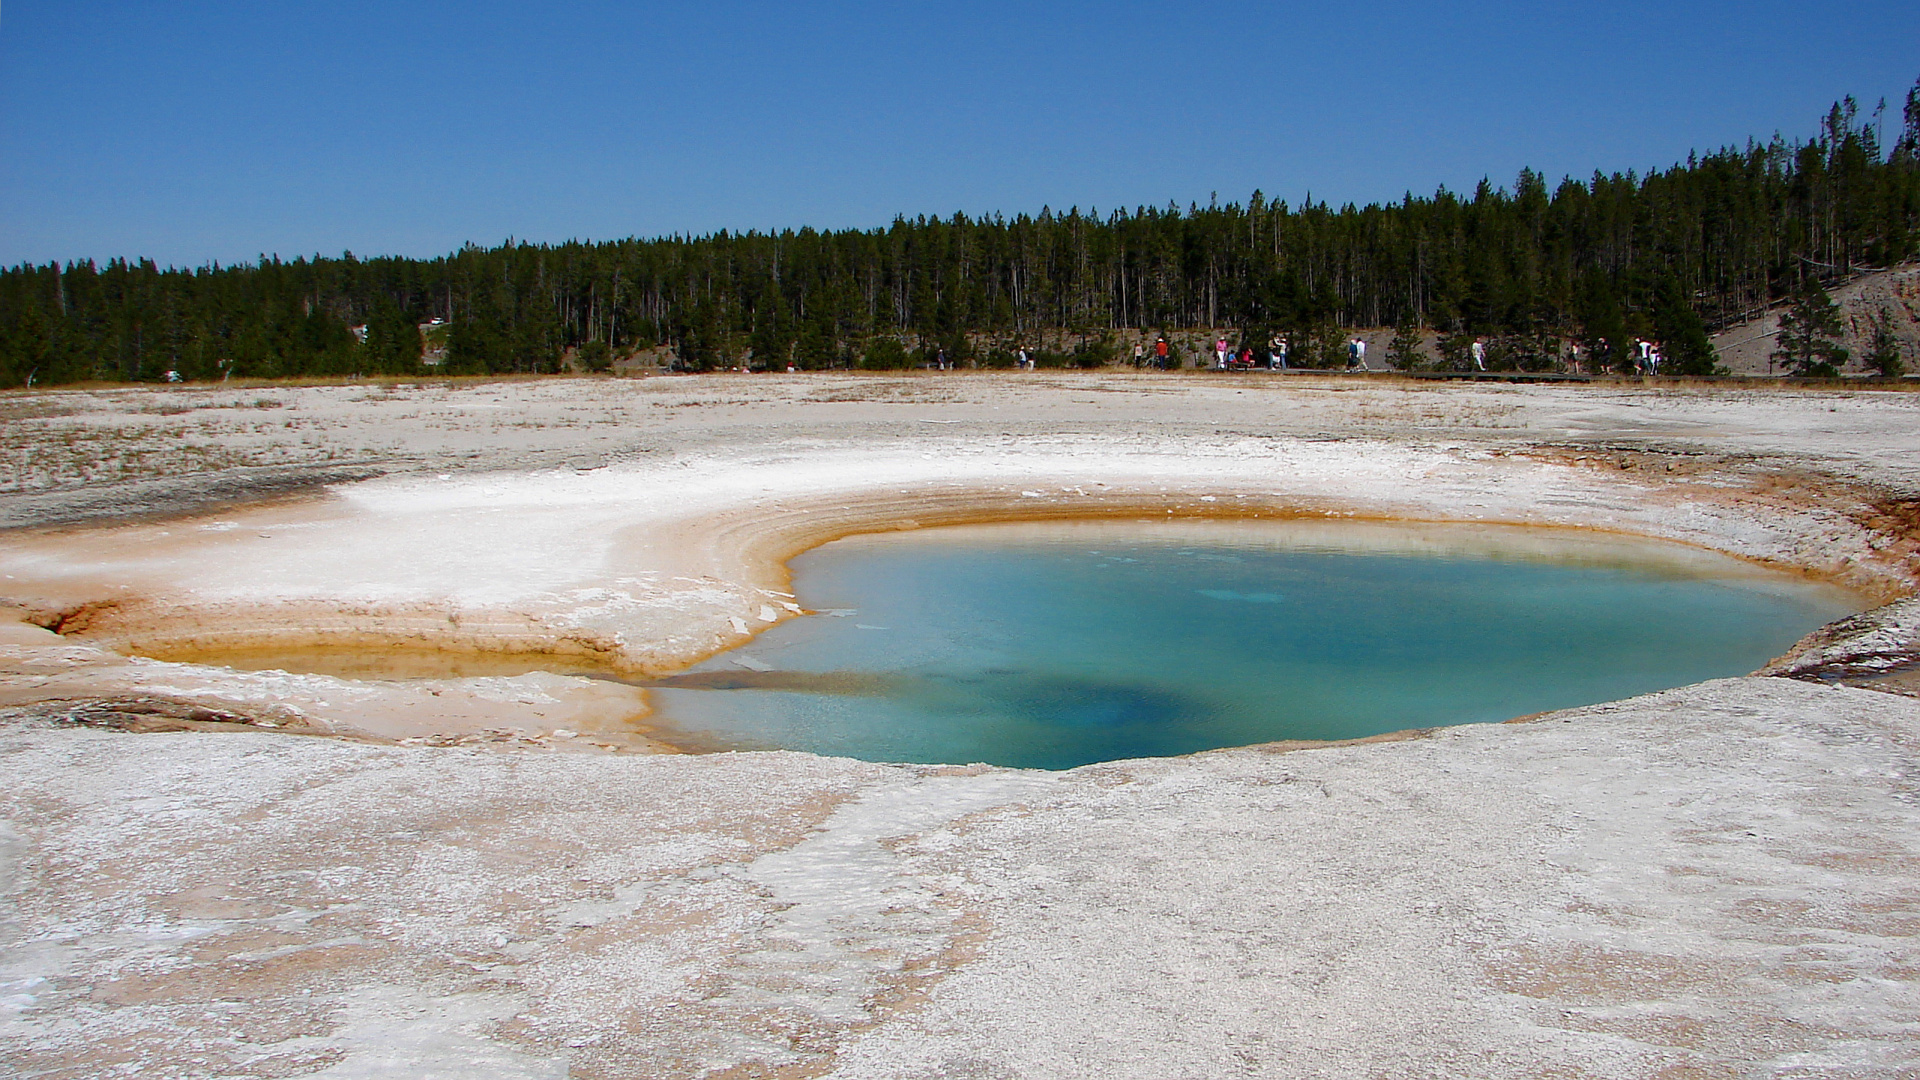 Turquoise Pool (Podróże » USA: Na ziemi Czejenów » Wielka Podróż » Park Narodowy Yellowstone » Gejzery, gorące źródła i jeziora » Midway Geyser Basin)